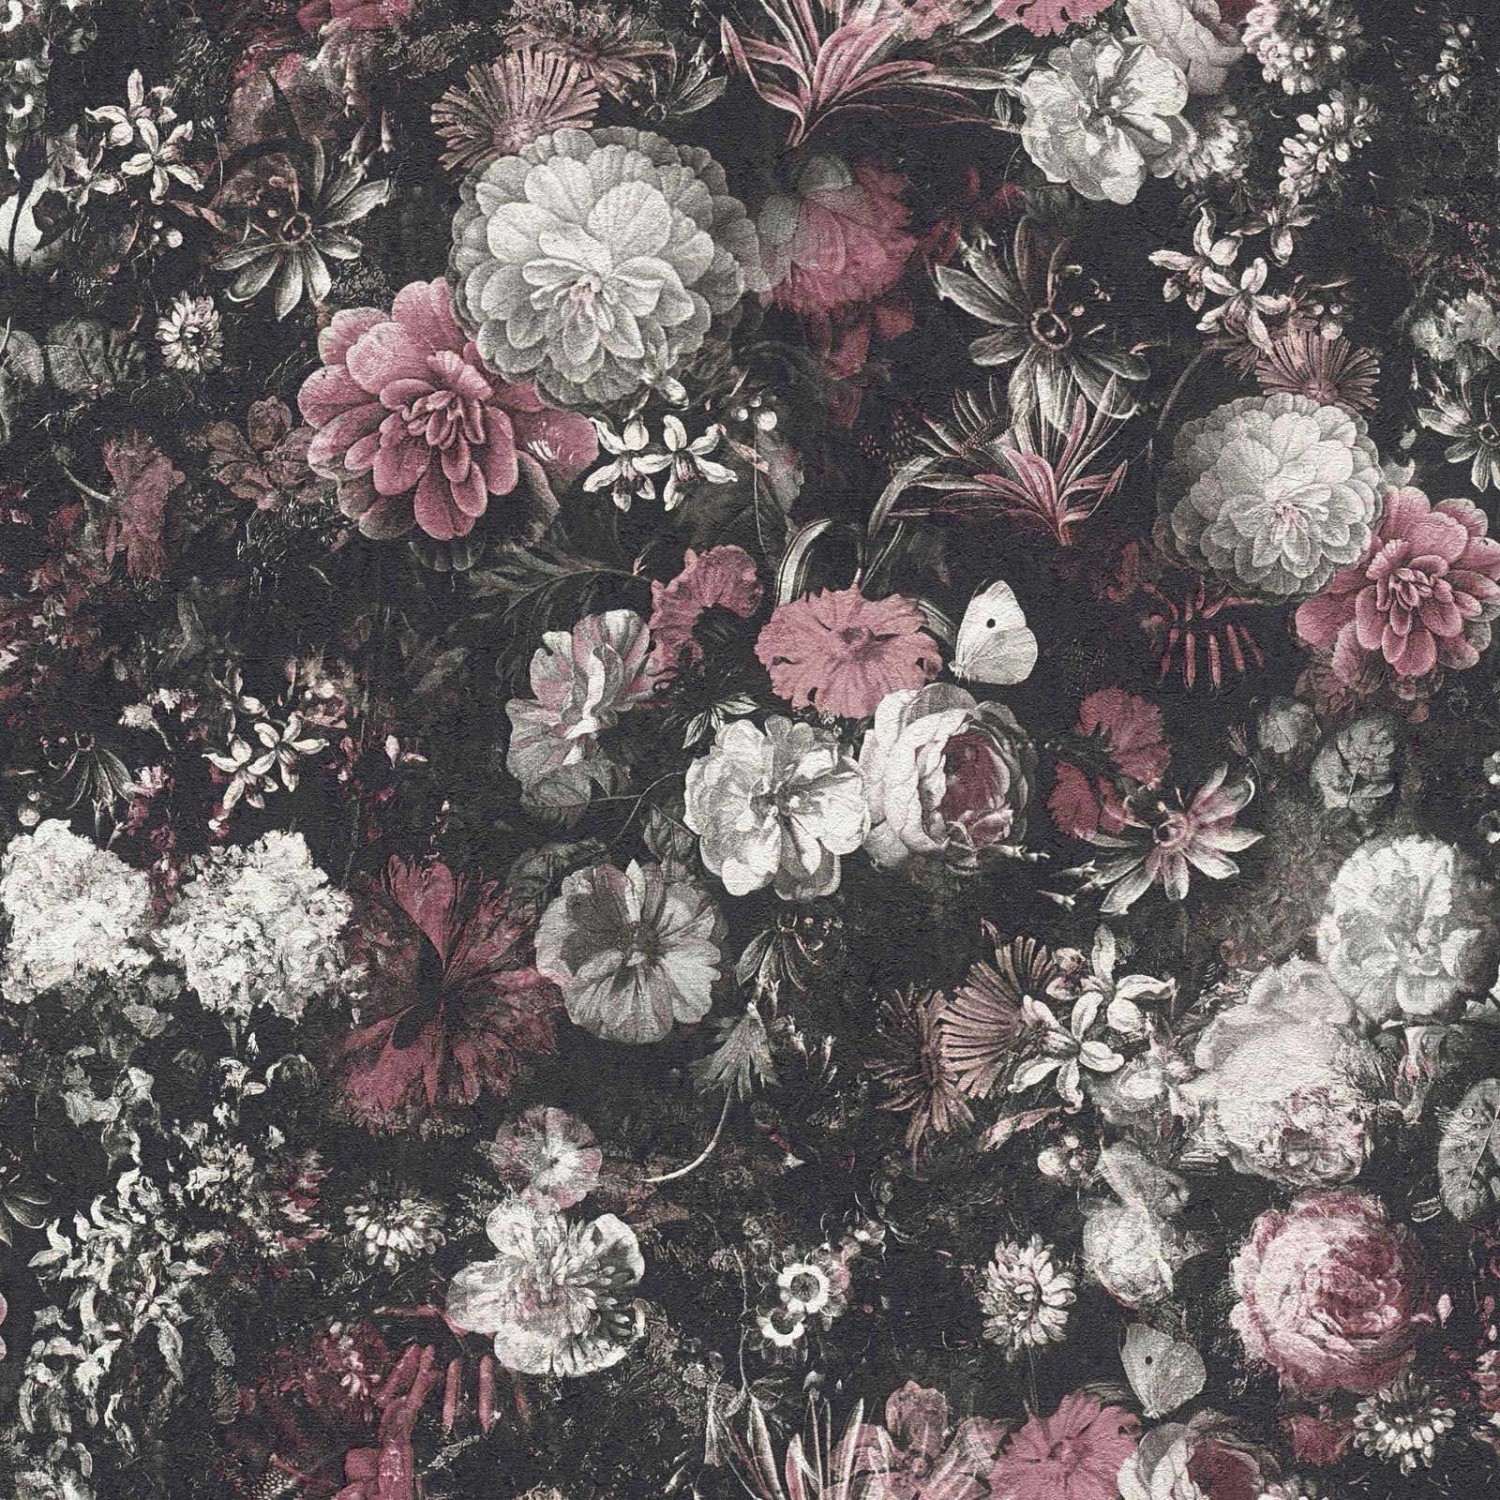 Bricoflor Vintage Tapete Floral Englische Vlies Blumentapete mit Pfingstrosen im Shabby Chic Romantische Vliestapete mit Blumen und Schmetterling von Bricoflor